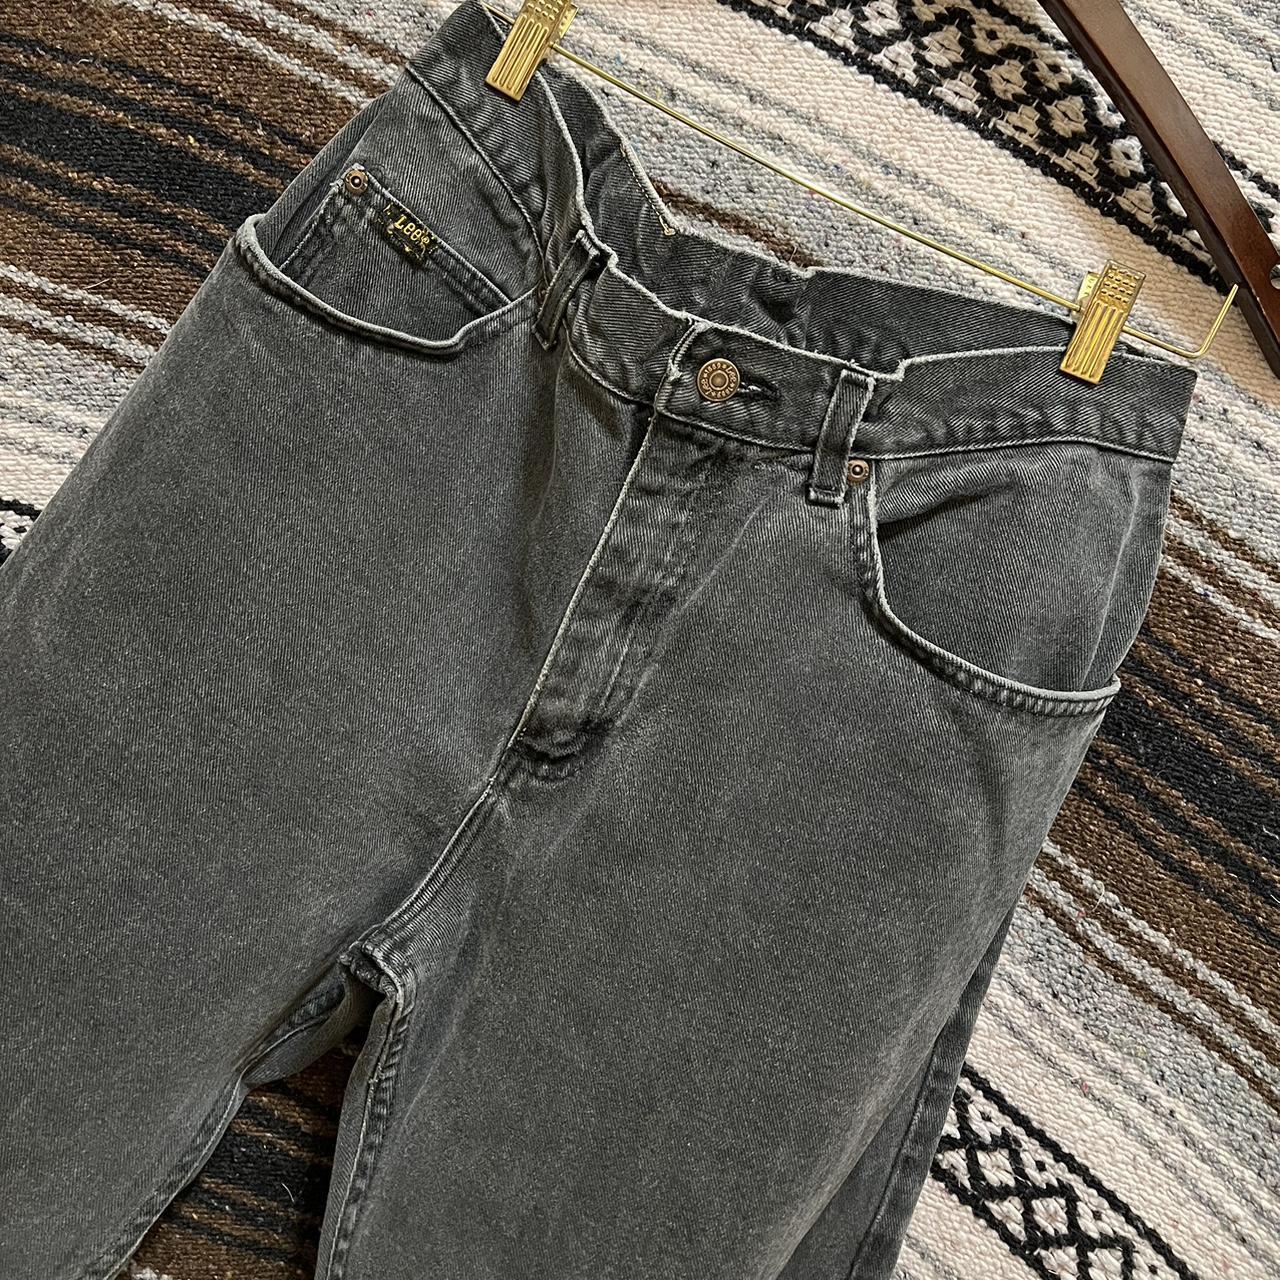 90s Vintage Lee Faded Black Denim Jeans 👖 30x28... - Depop